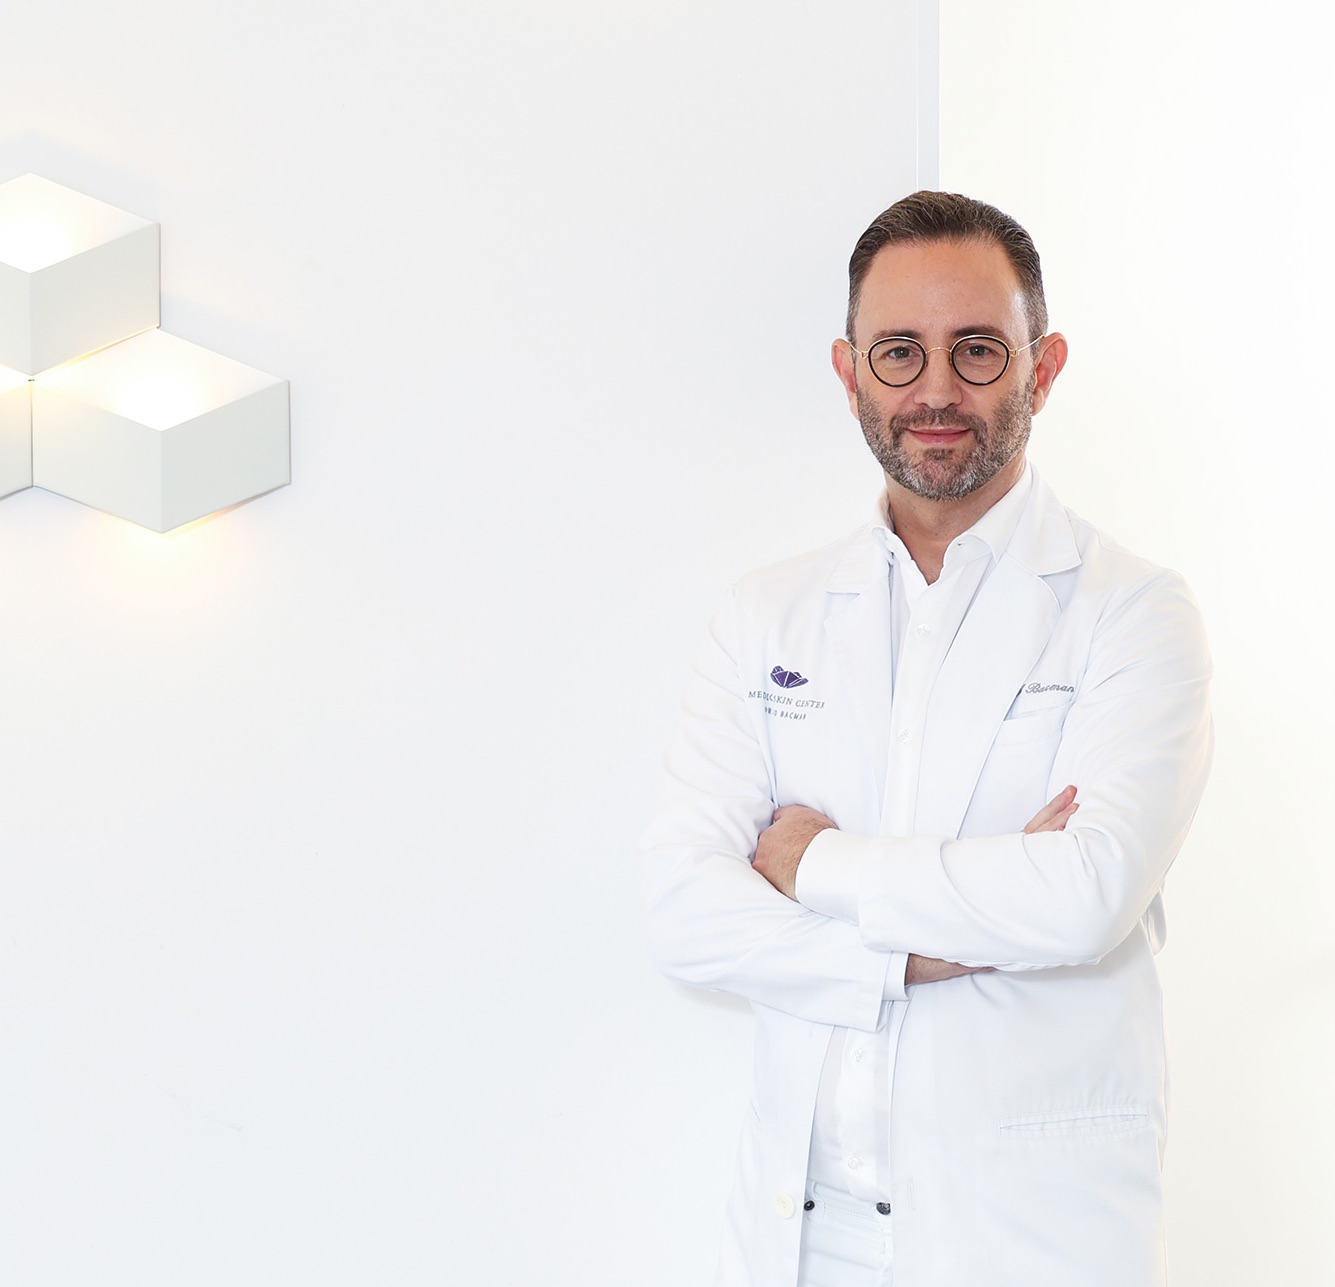 Dermatologe, Dr. David Bacman, als Facharzt für Dermatologie und Ästhetik im MEDISPA, der Beautyklinik mitten in Köln